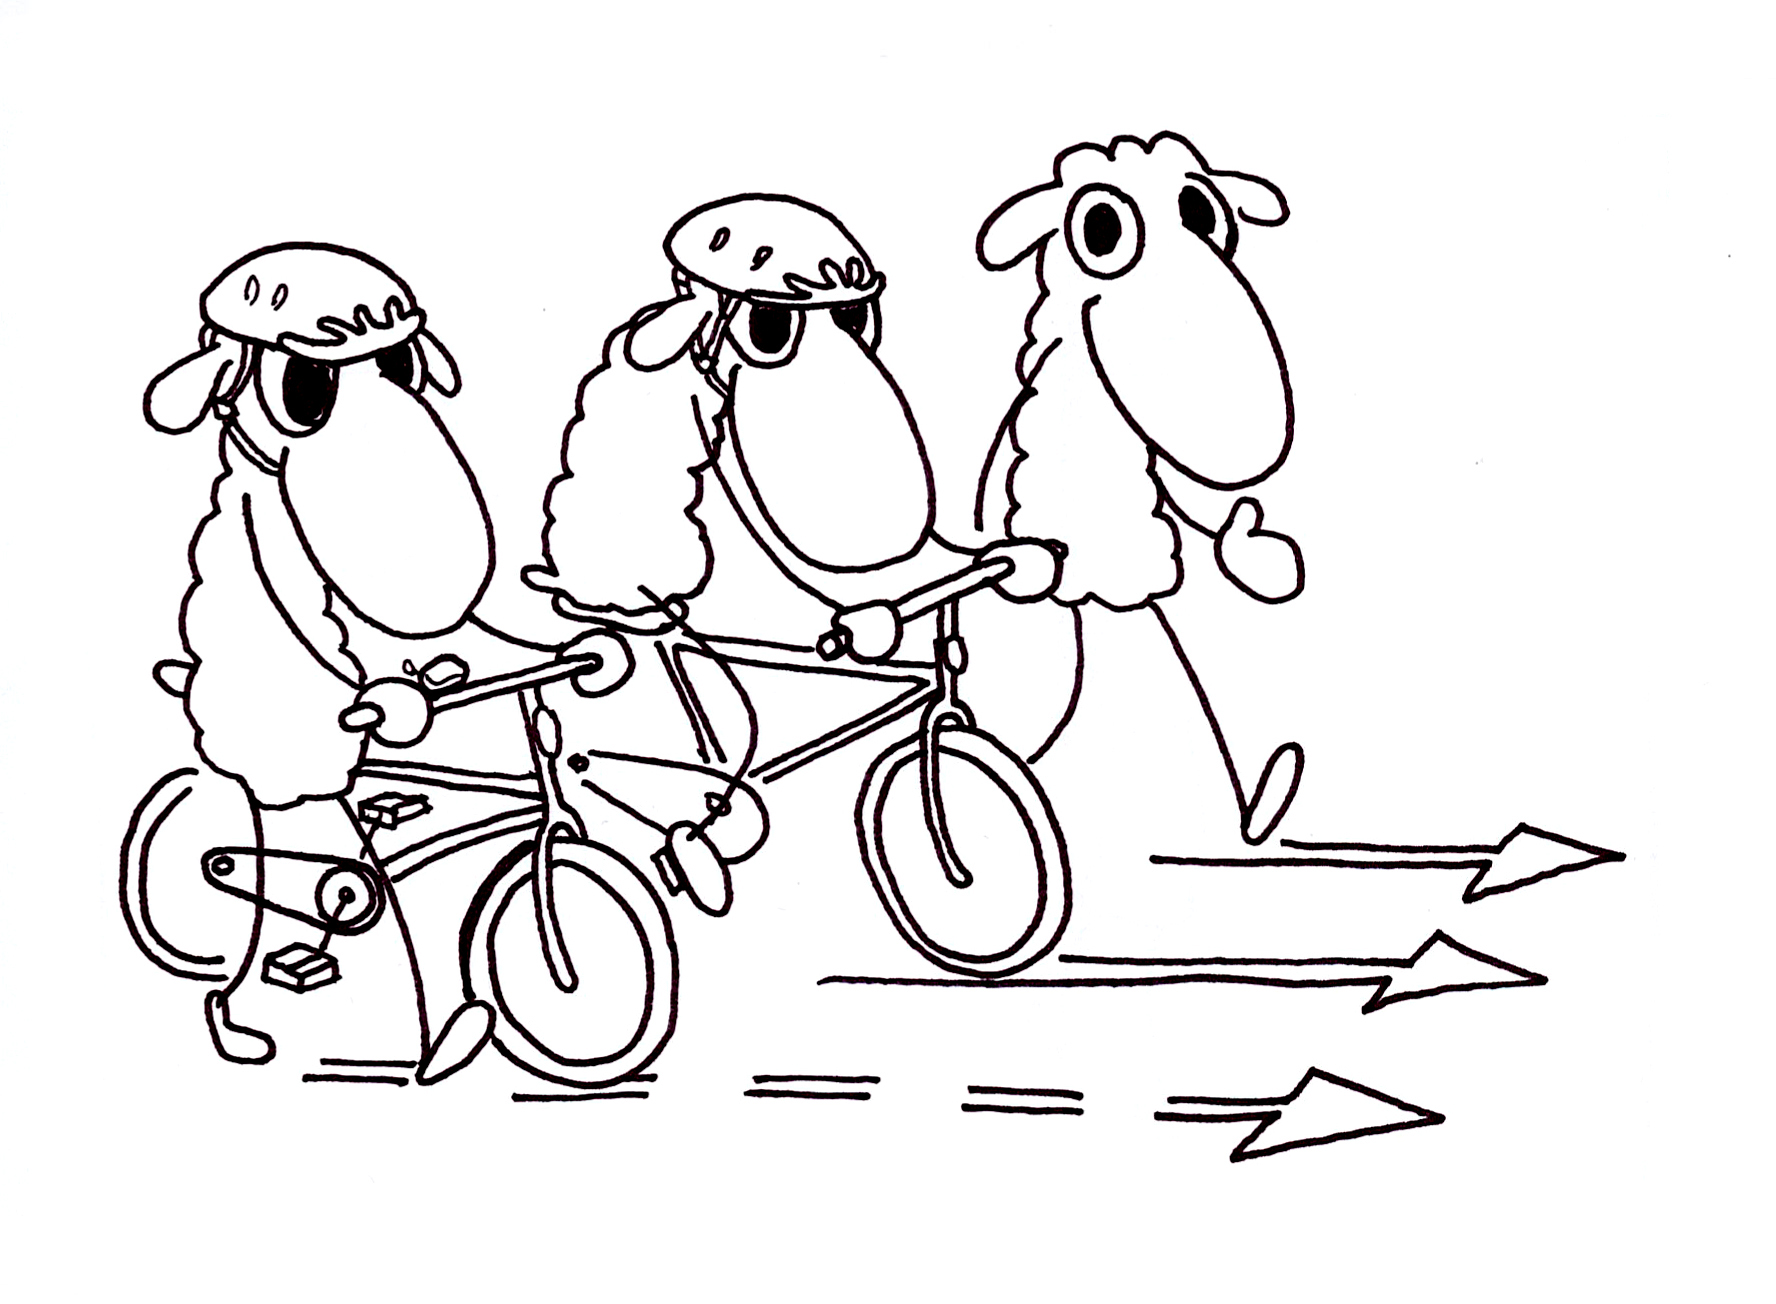 Jalankulkija, pyöräilijä ja pyörää taluttava lammas kulkemassa eteenpäin. Pyöräilevällä lampaalla ja pyörää taluttavalla lampaalla on kypärät päässä.